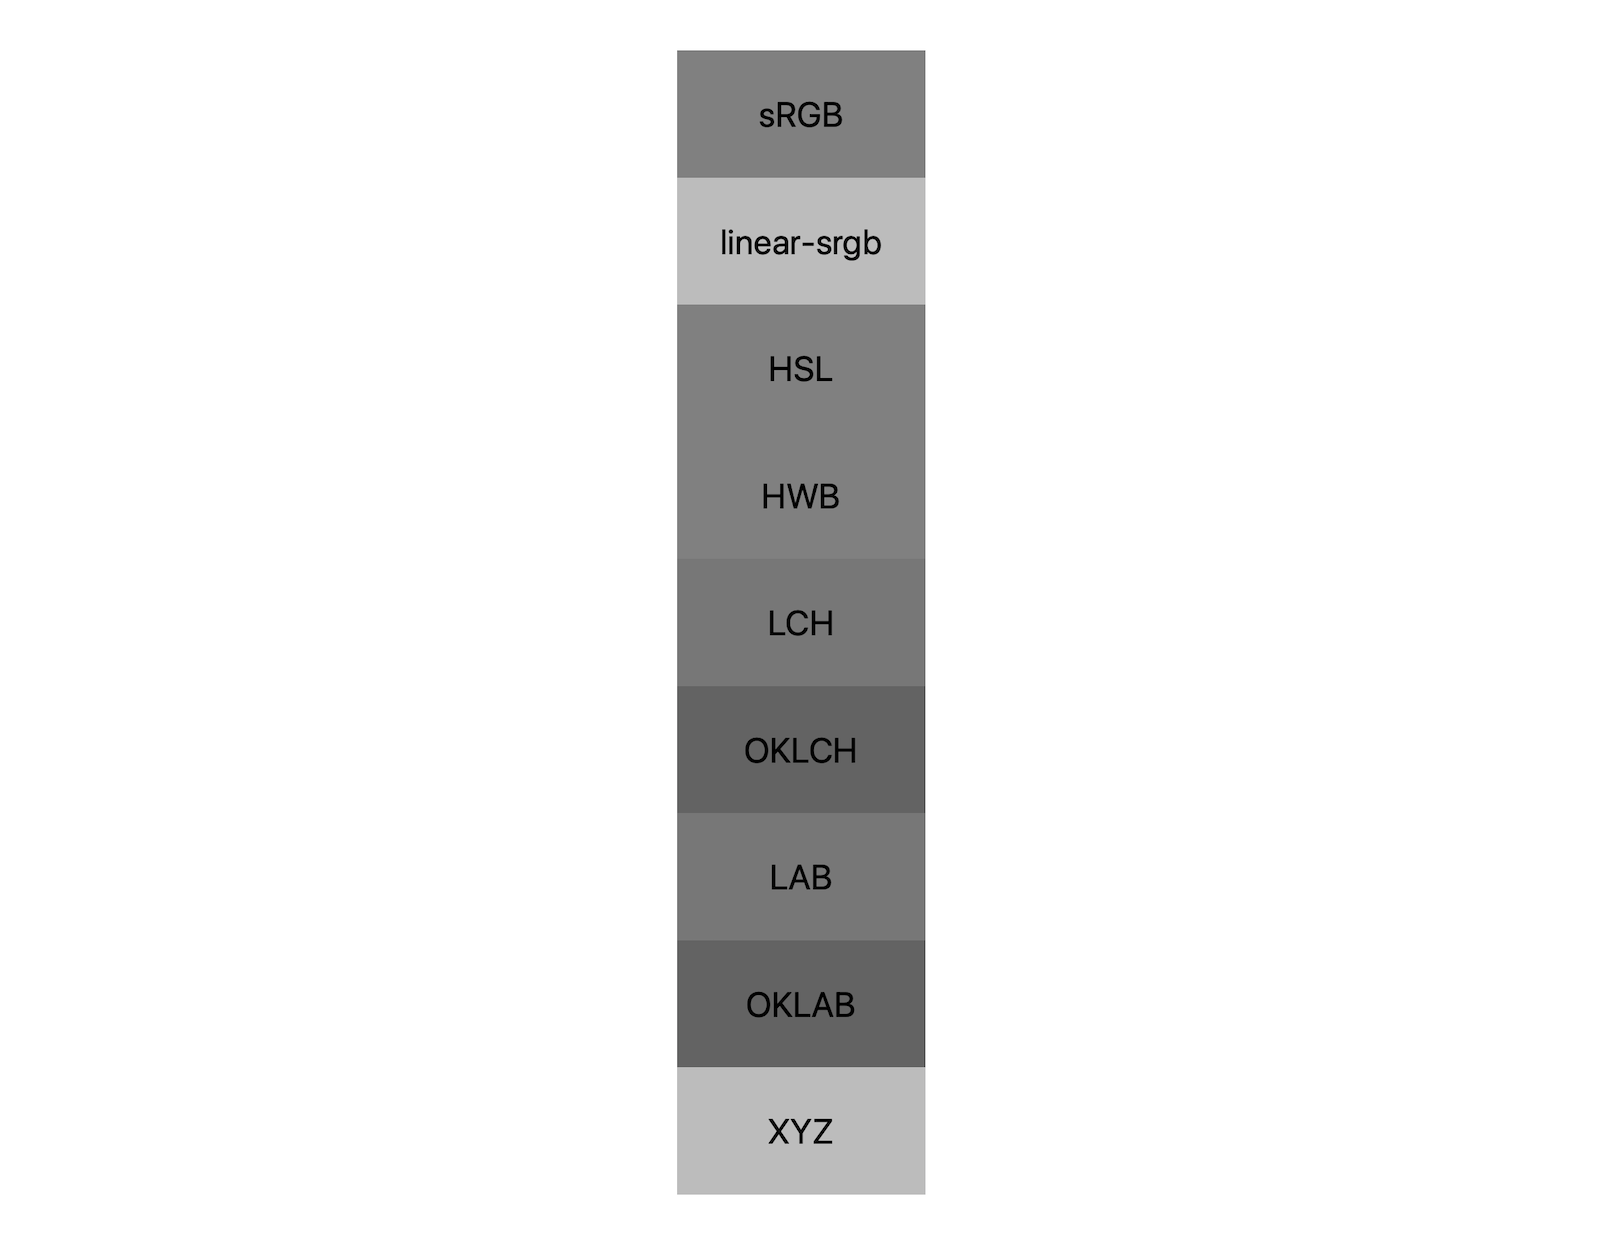 ב-7 מרחבים משותפים של צבעים (srgb, linear-srgb, lch, oklch, lab, oklab, xyz), מוצגת בכל אחד מהם תוצאות השילוב של שחור ולבן. מוצגים בערך 5 גוונים שונים, כך שכל מרחב צבעים יתערבב באופן שונה לאפור.